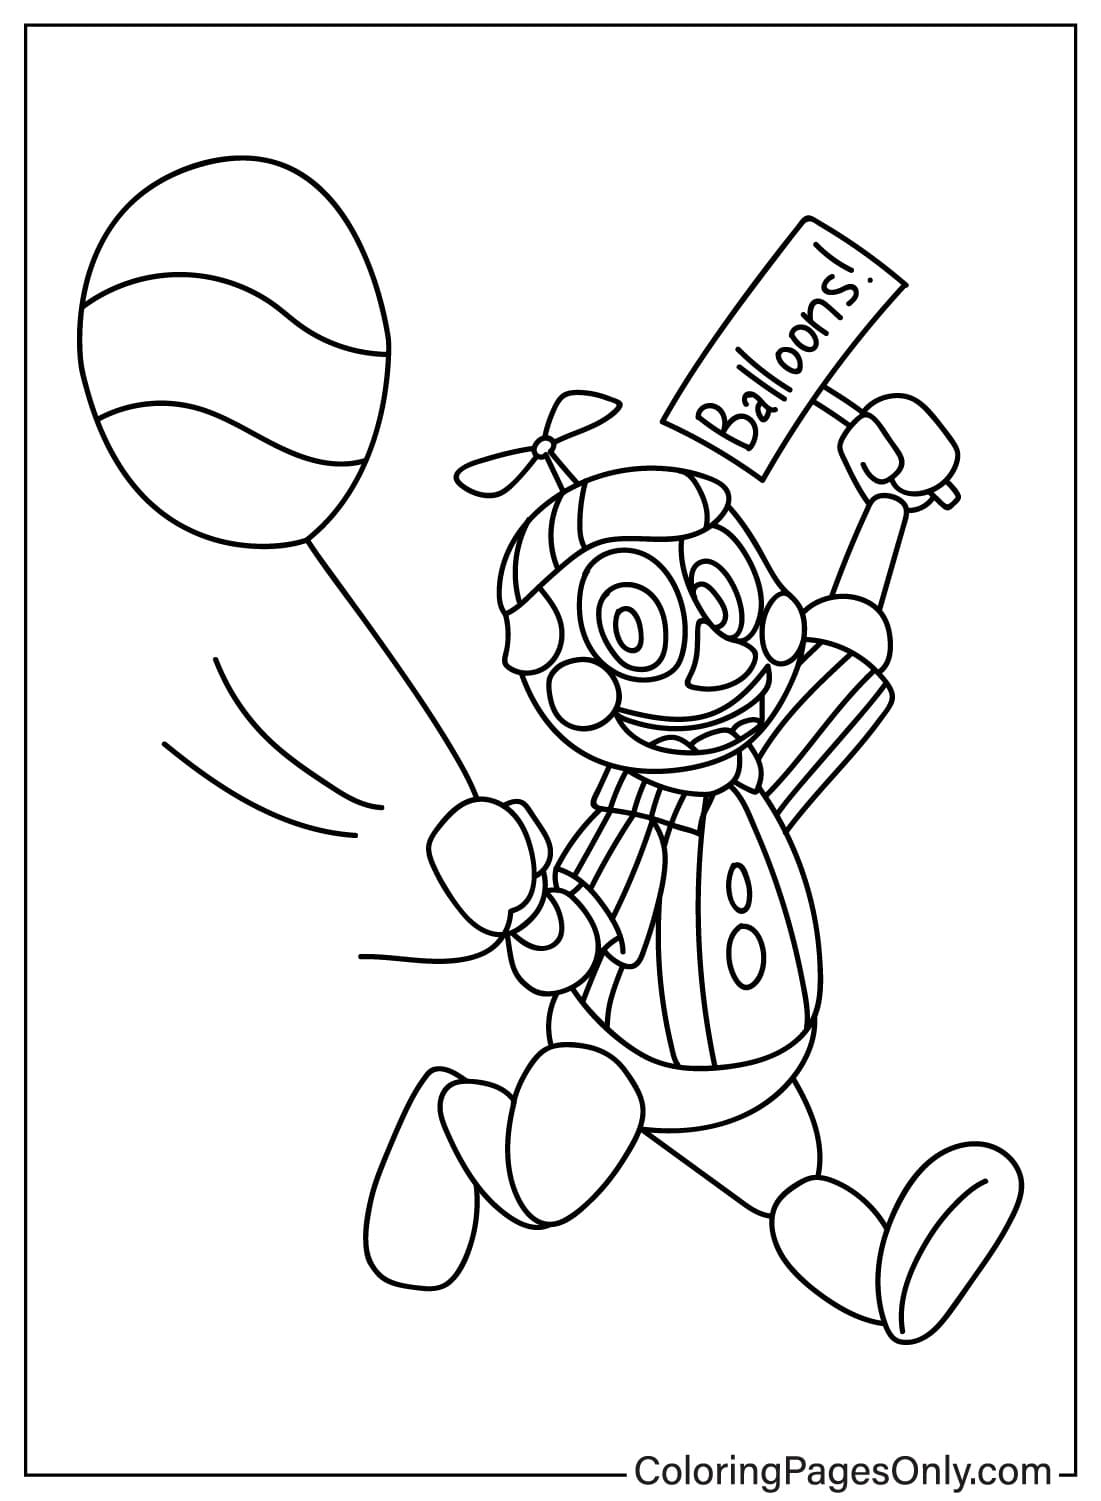 Бесплатная распечатка Мальчика с воздушными шарами из Five Nights At Freddy's 2